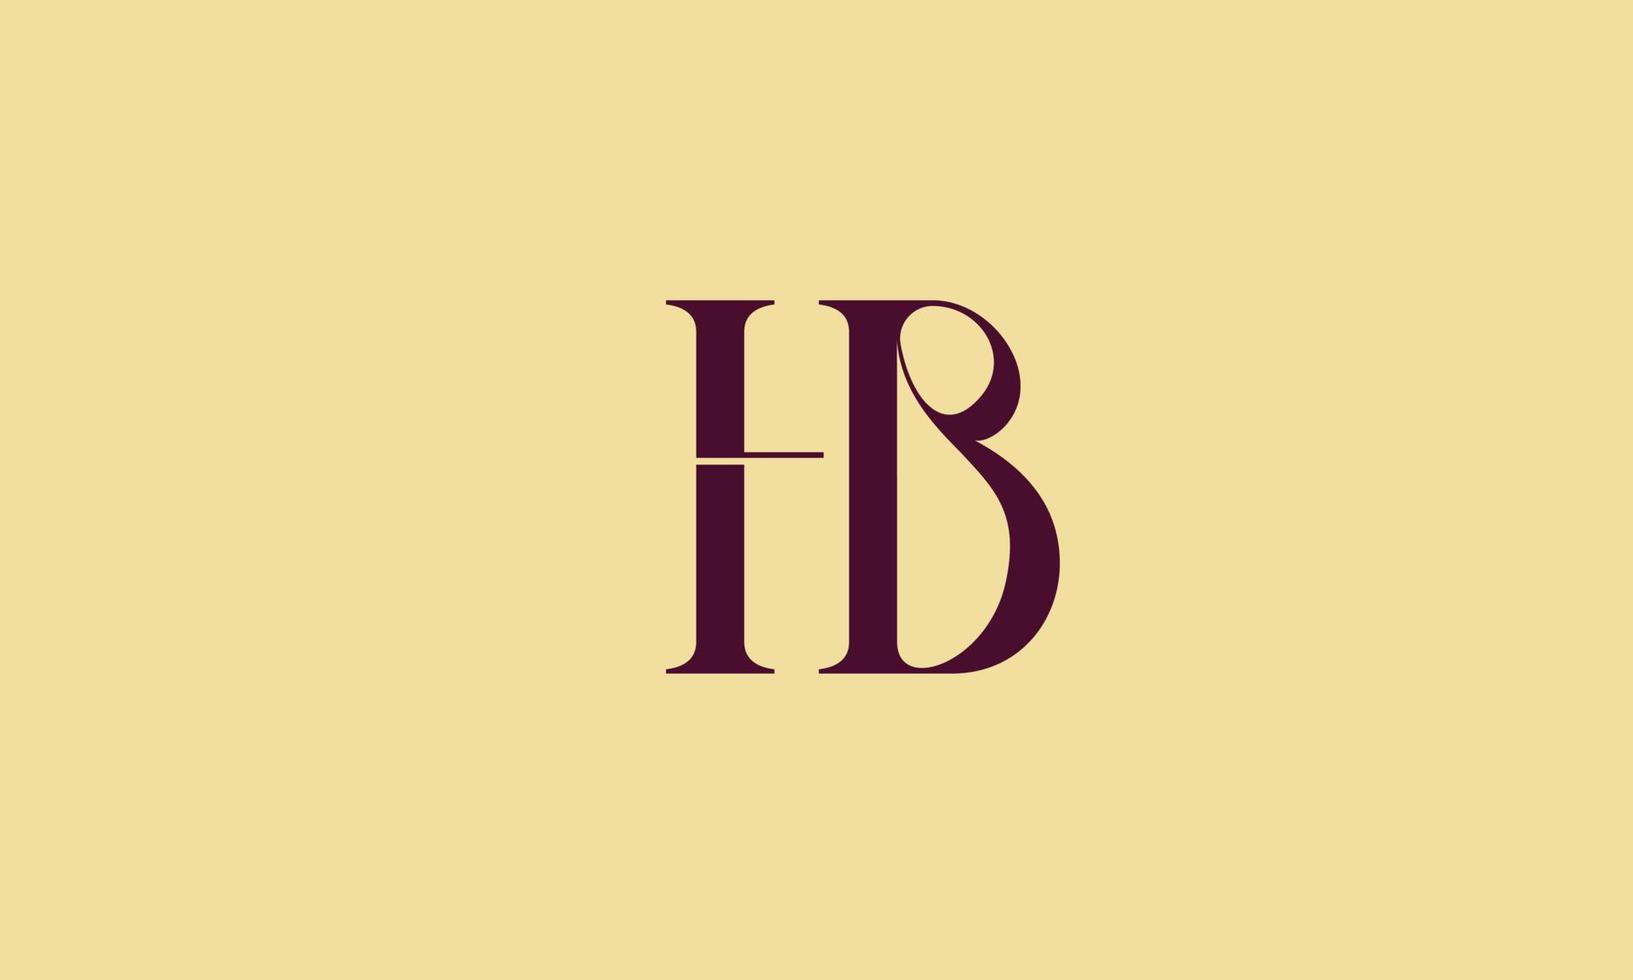 alfabetet bokstäver initialer monogram logotyp hb, bh, h och b vektor